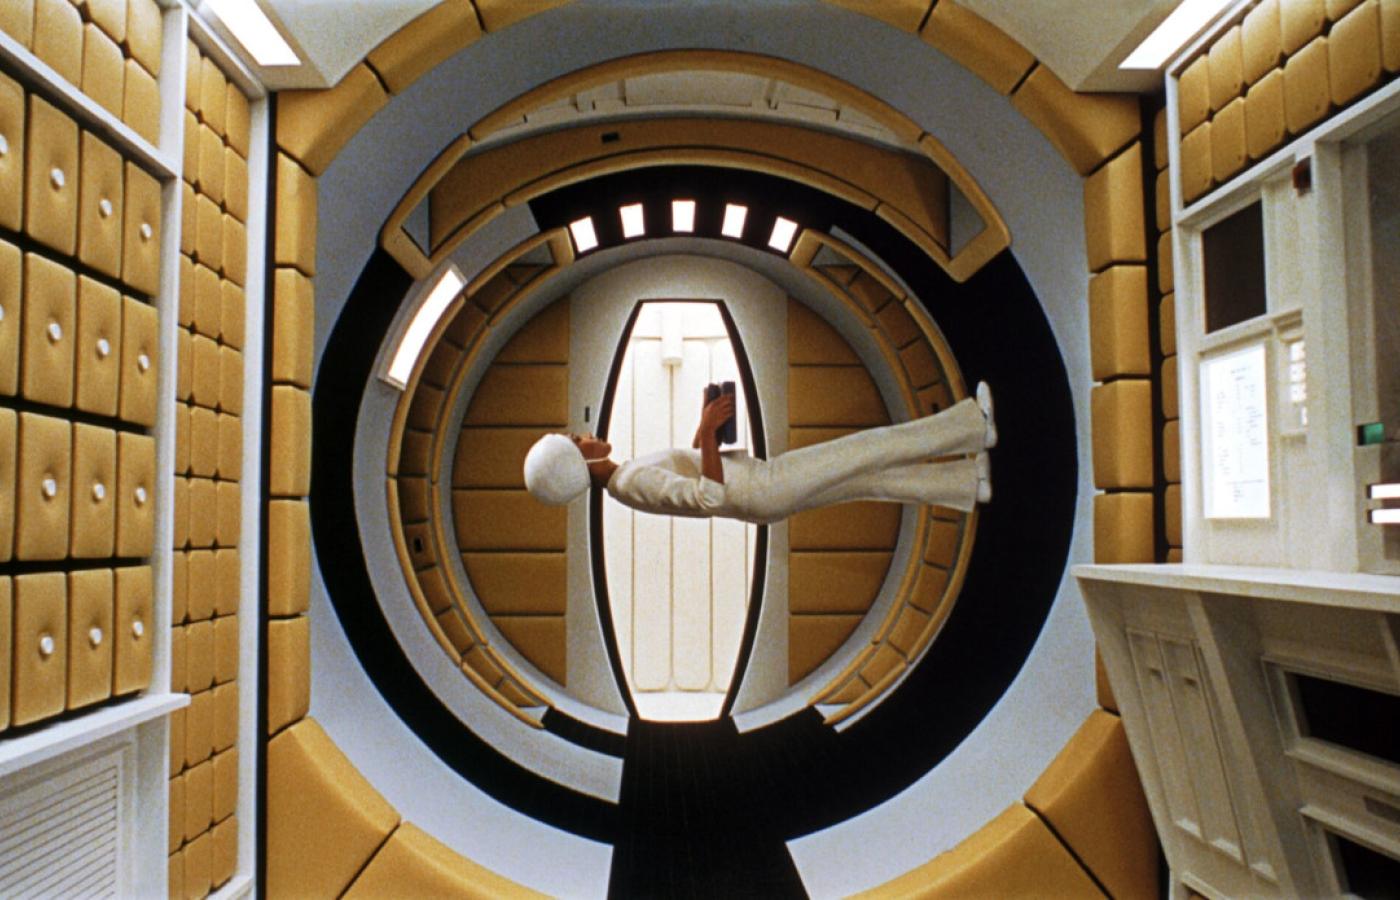 W filmie „2001: Odyseja kosmiczna” Stanleya Kubricka przeciwko ludzkiej załodze statku buntuje się komputer HAL 9000, który zyskał świadomość.